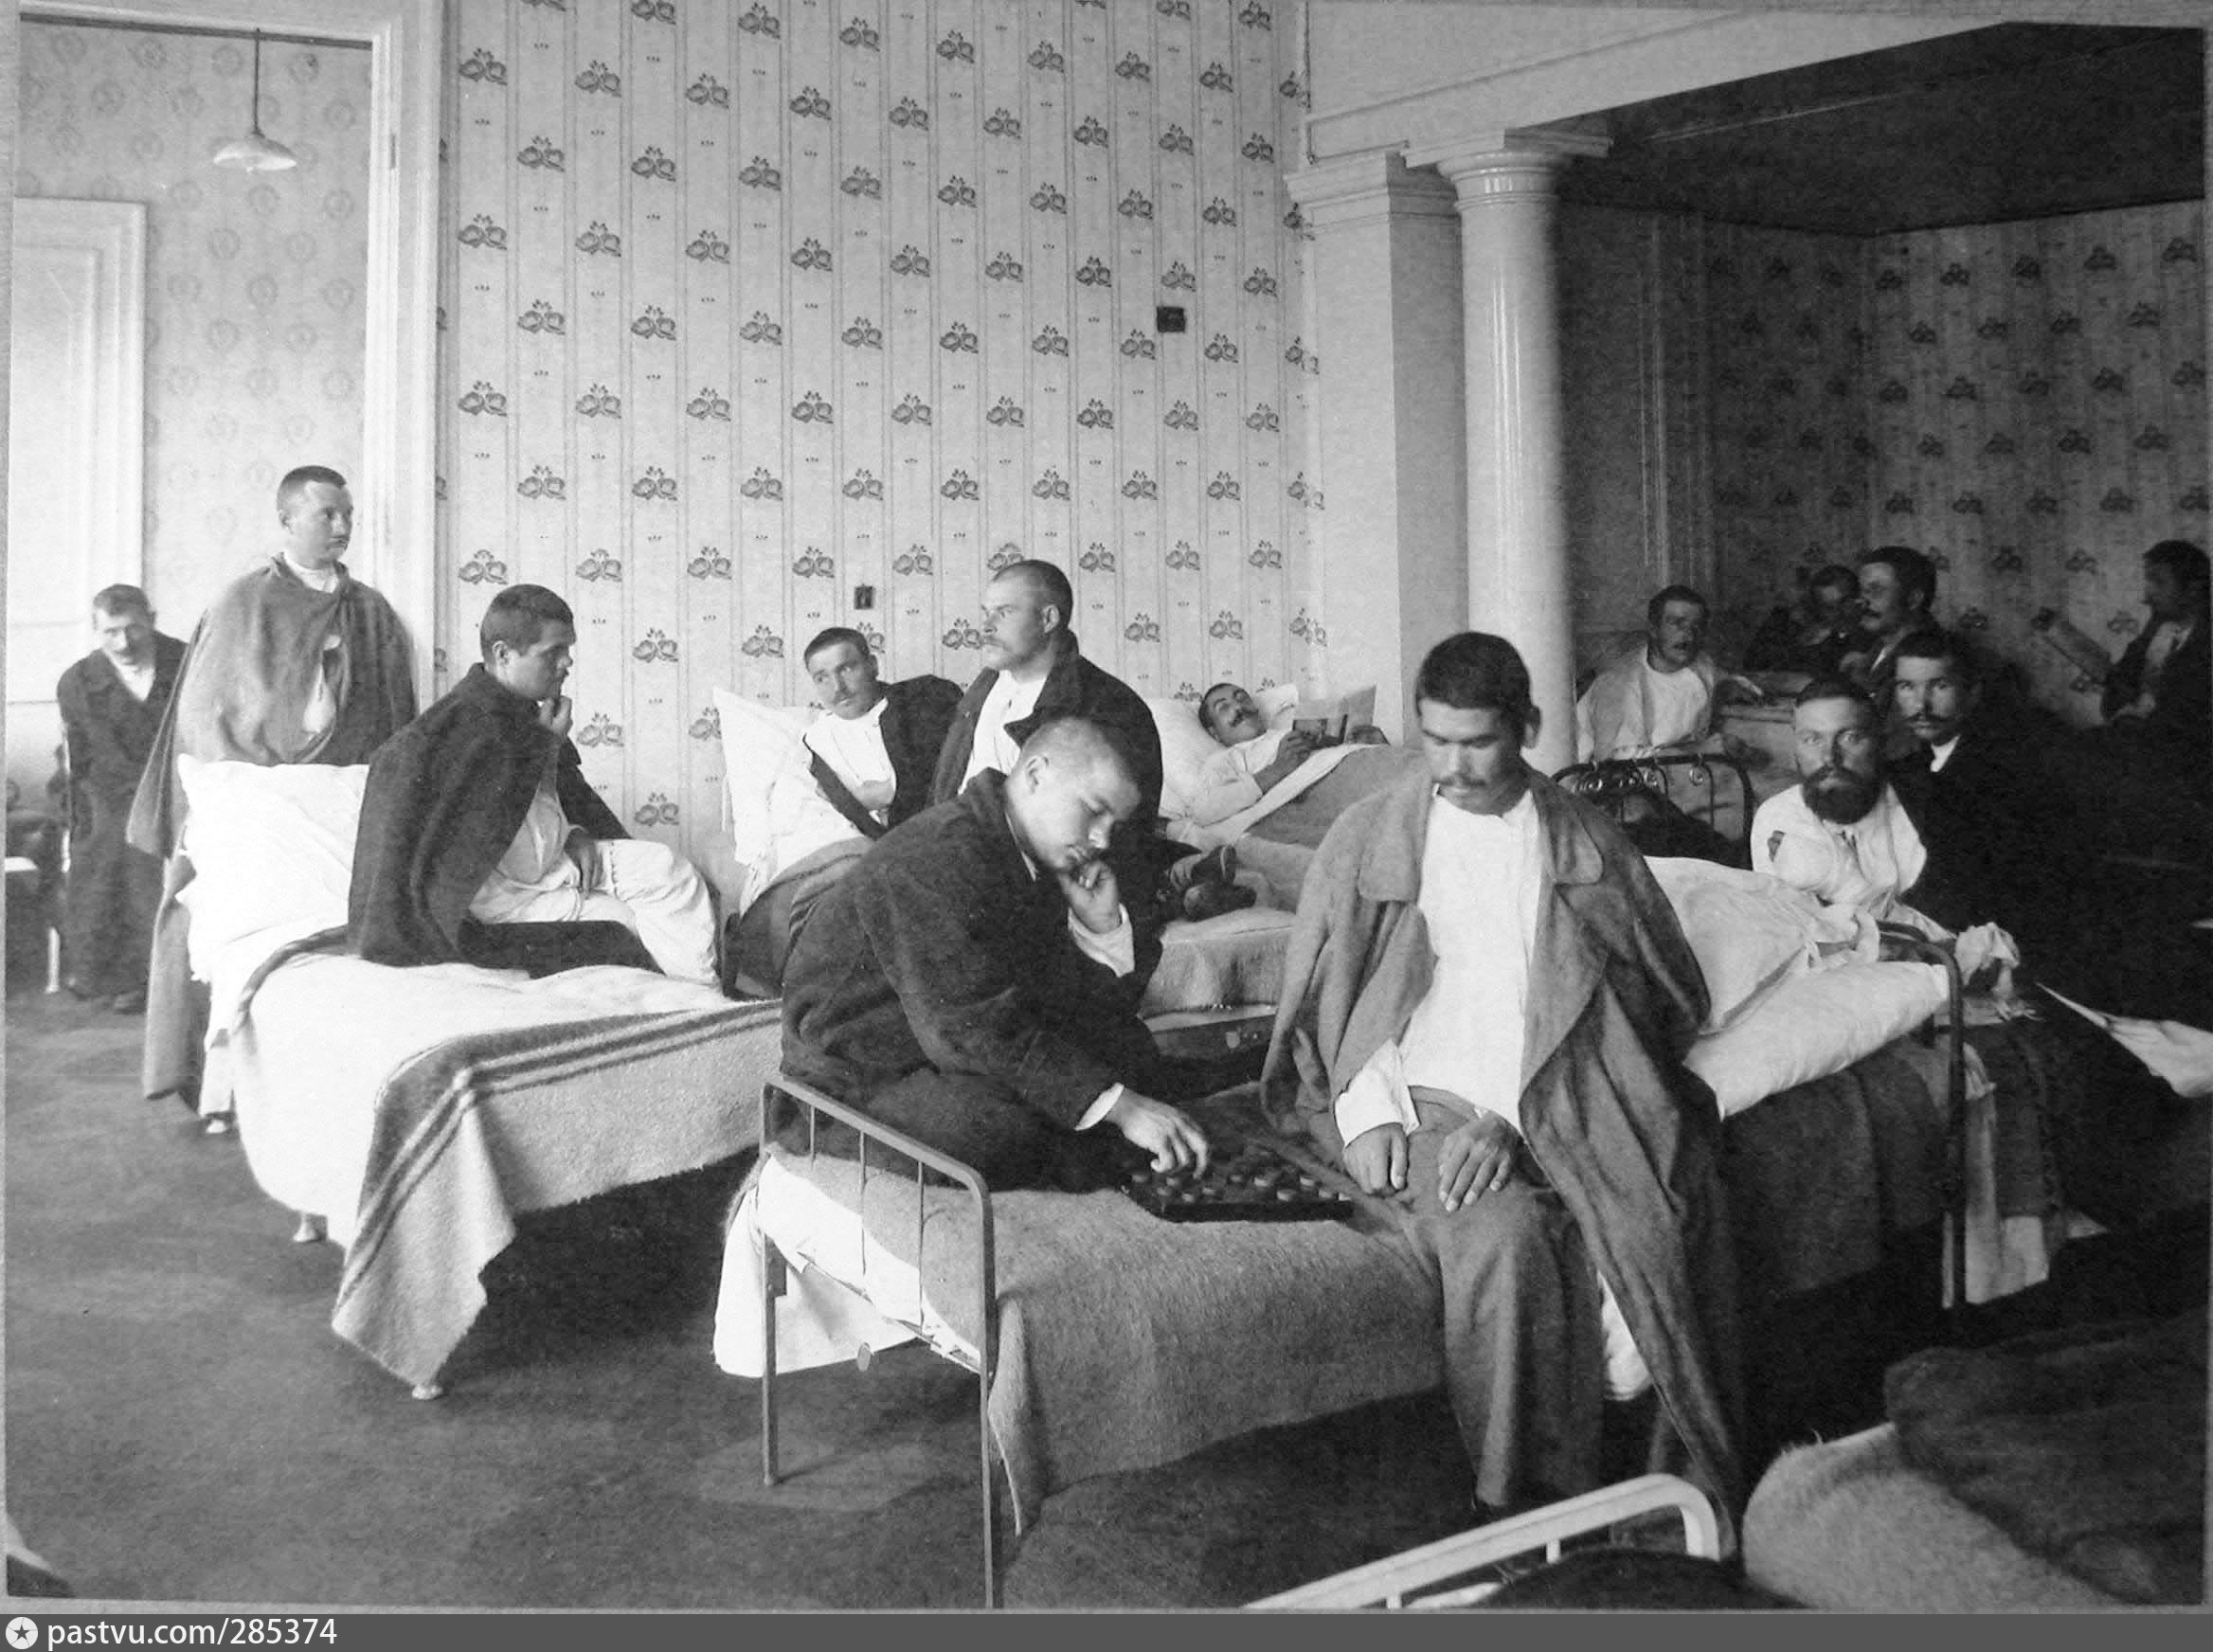 15 госпиталей. Киевский военный госпиталь 1914. Госпиталь первой мировой войны. 1914 Году госпиталь Швейцария. Полевой лазарет первой мировой войны.